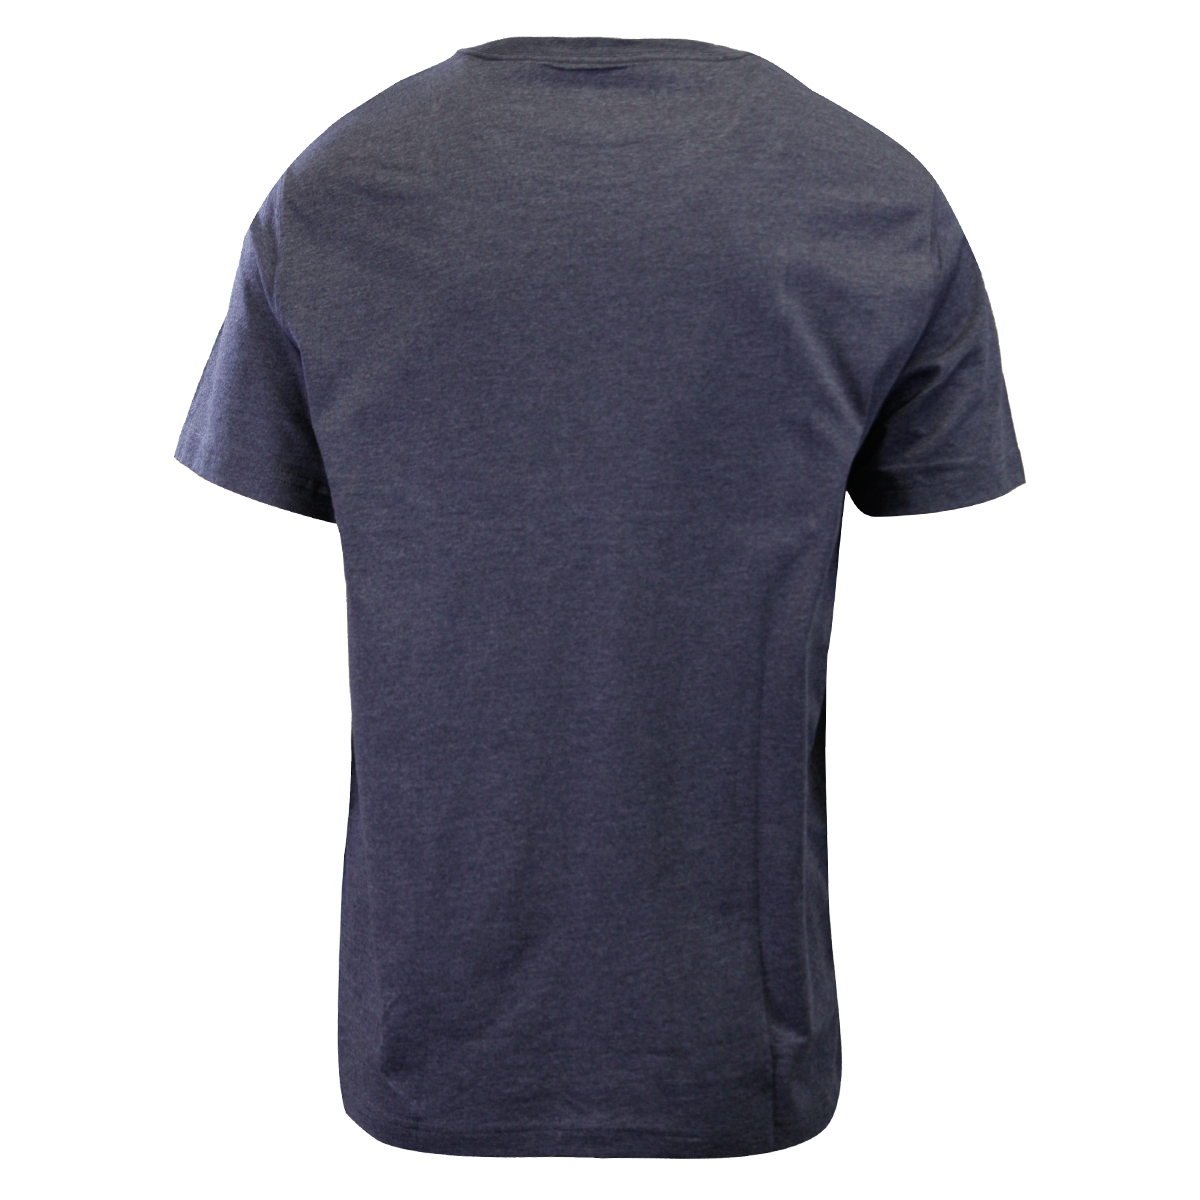 Eddie Bauer Men's 2 Pack Navy Graphic & Grey Crew S/S T-Shirt (S01)